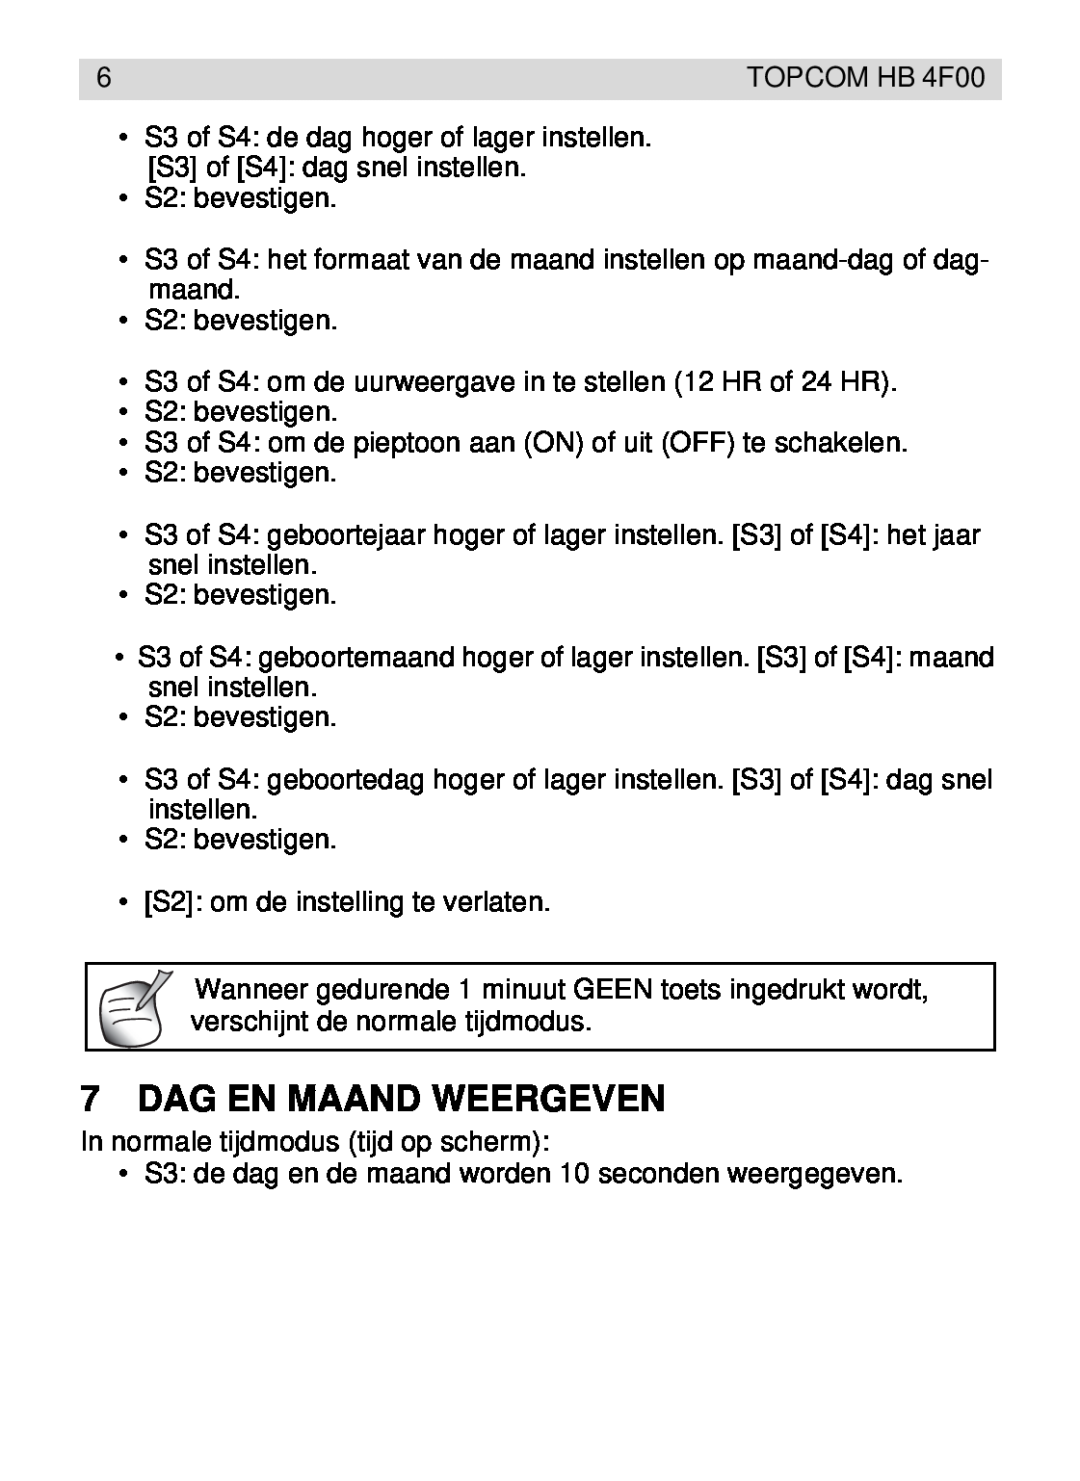 Topcom HB 4F00 manual Dag En Maand Weergeven 